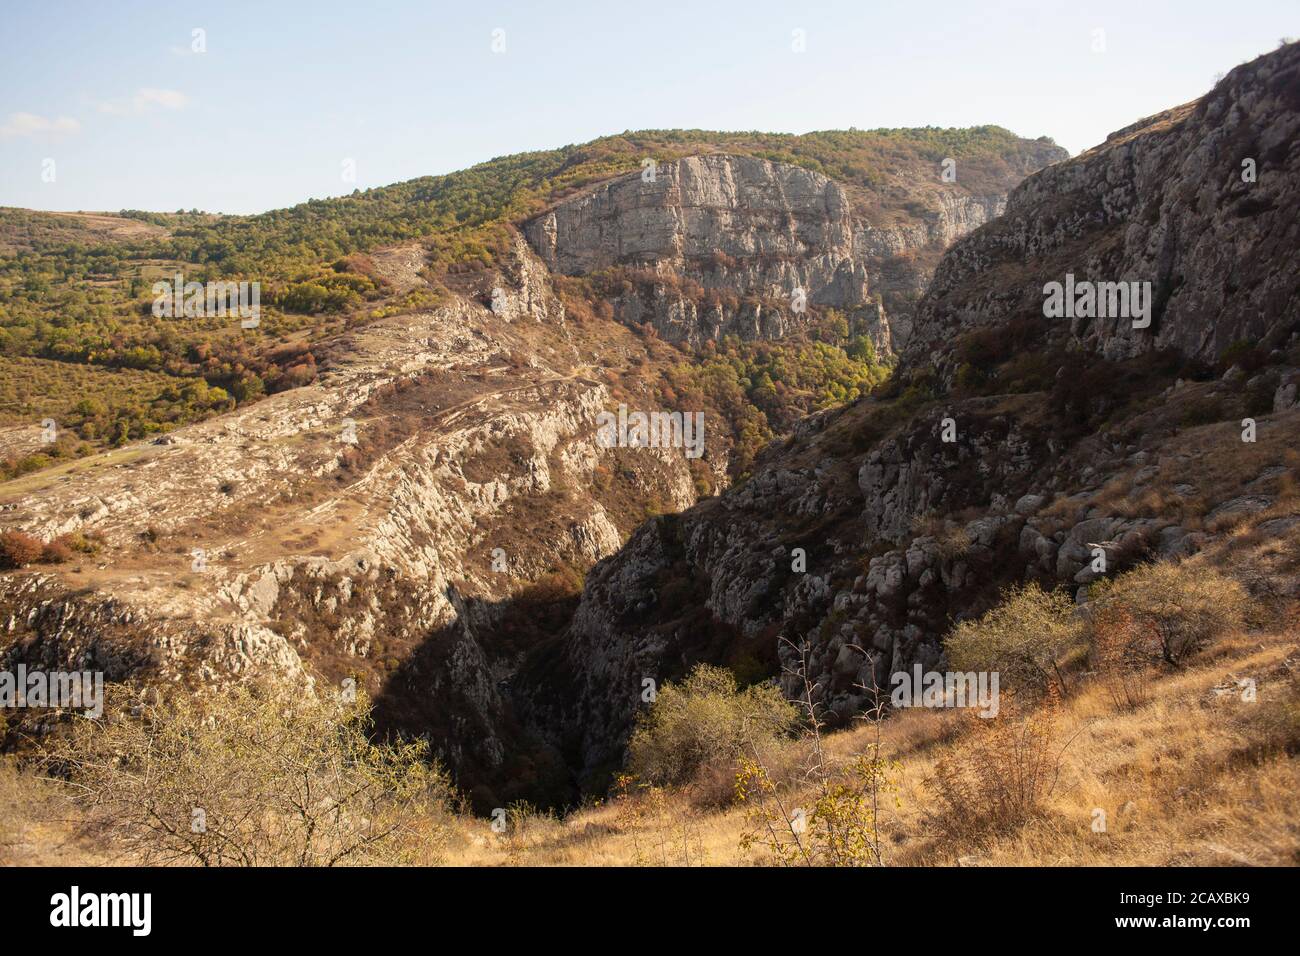 Mountains at Nagorno Karabakh Stock Photo